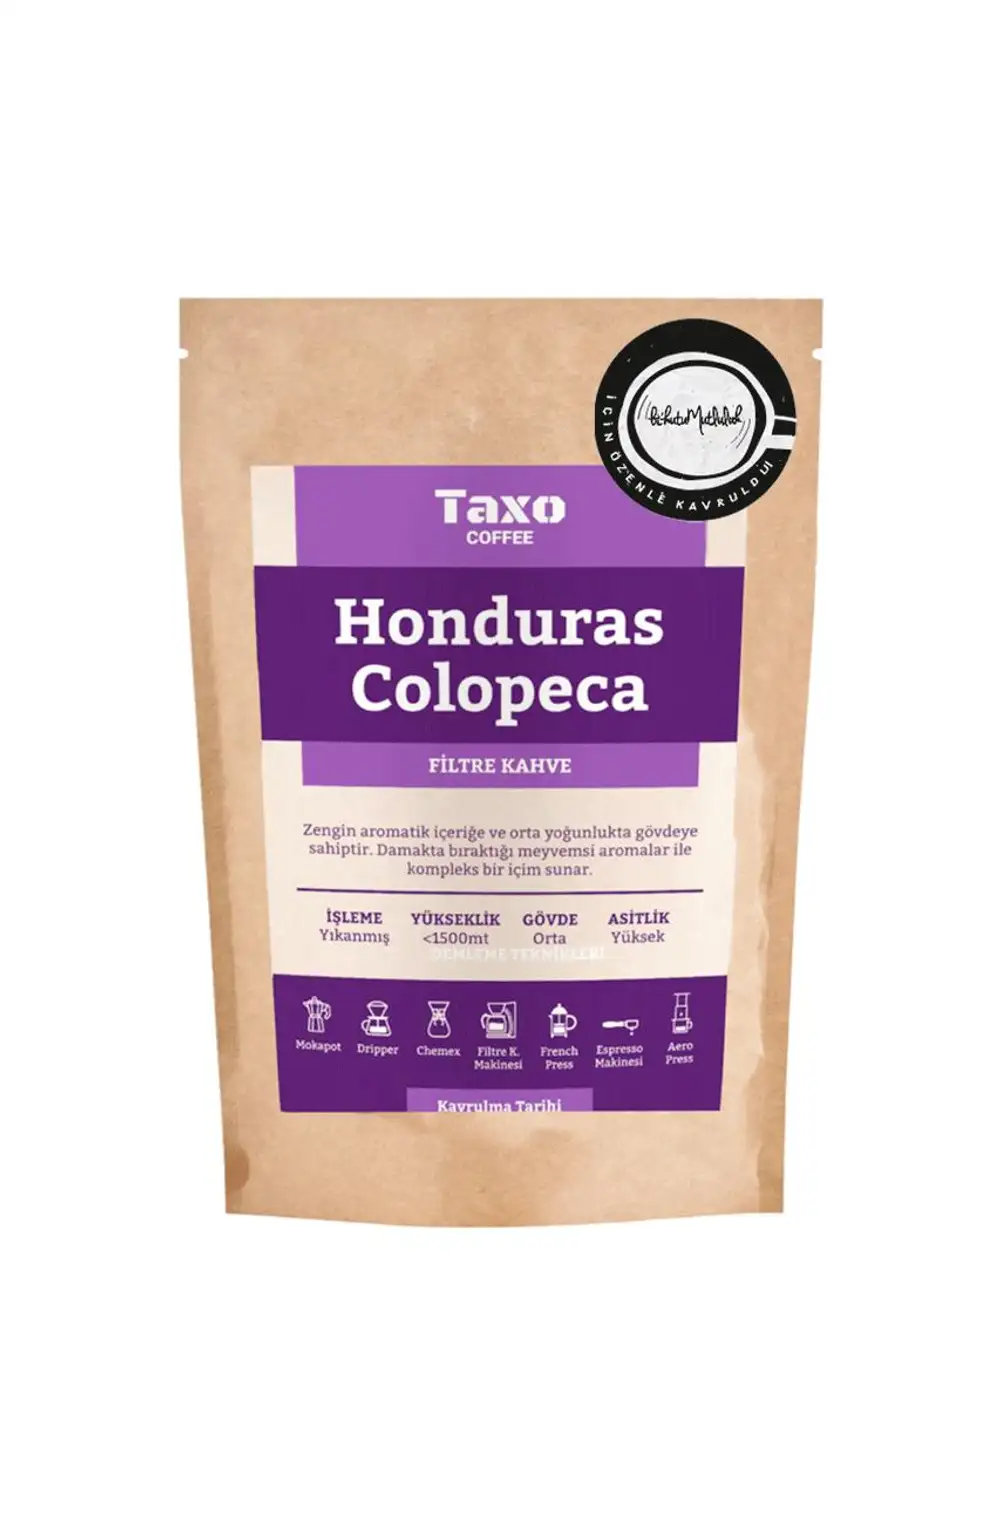 Filtre Kahve - Honduras Colopeca Taxo Coffee 50 gr.